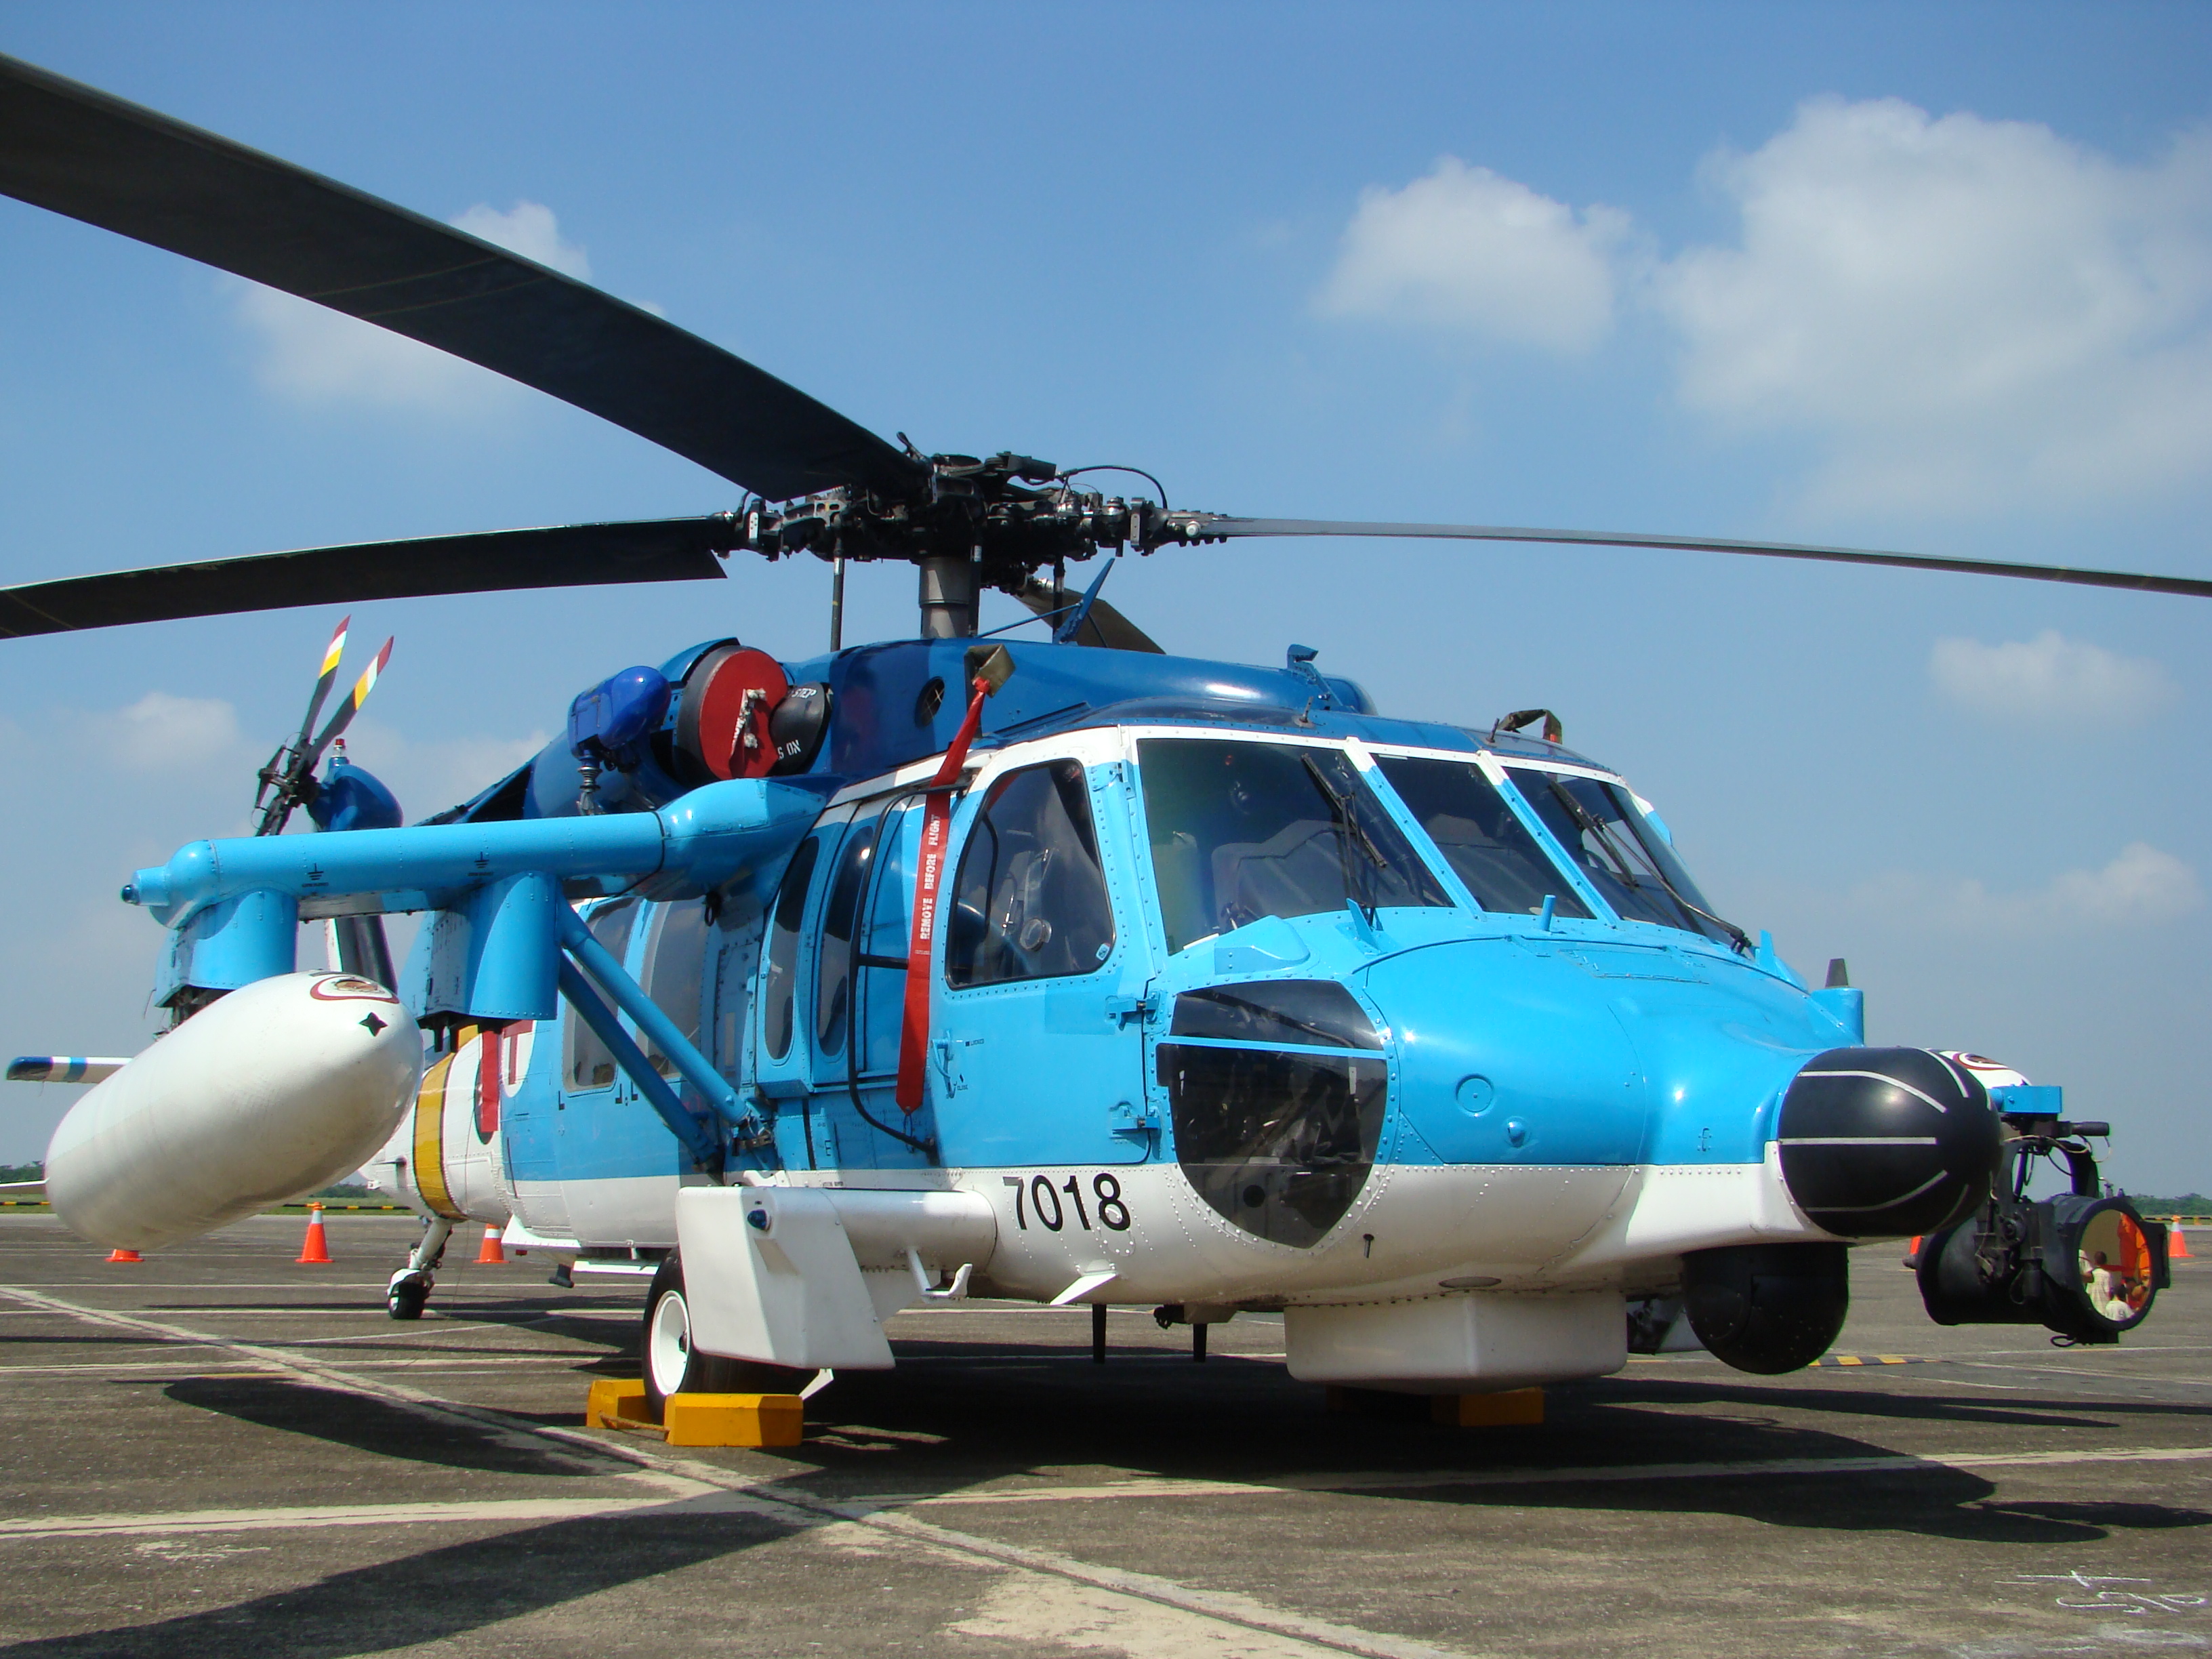 A nyitókötelék S-70C kutató-mentő helikoptere <br>(fotó: panoramio.com)